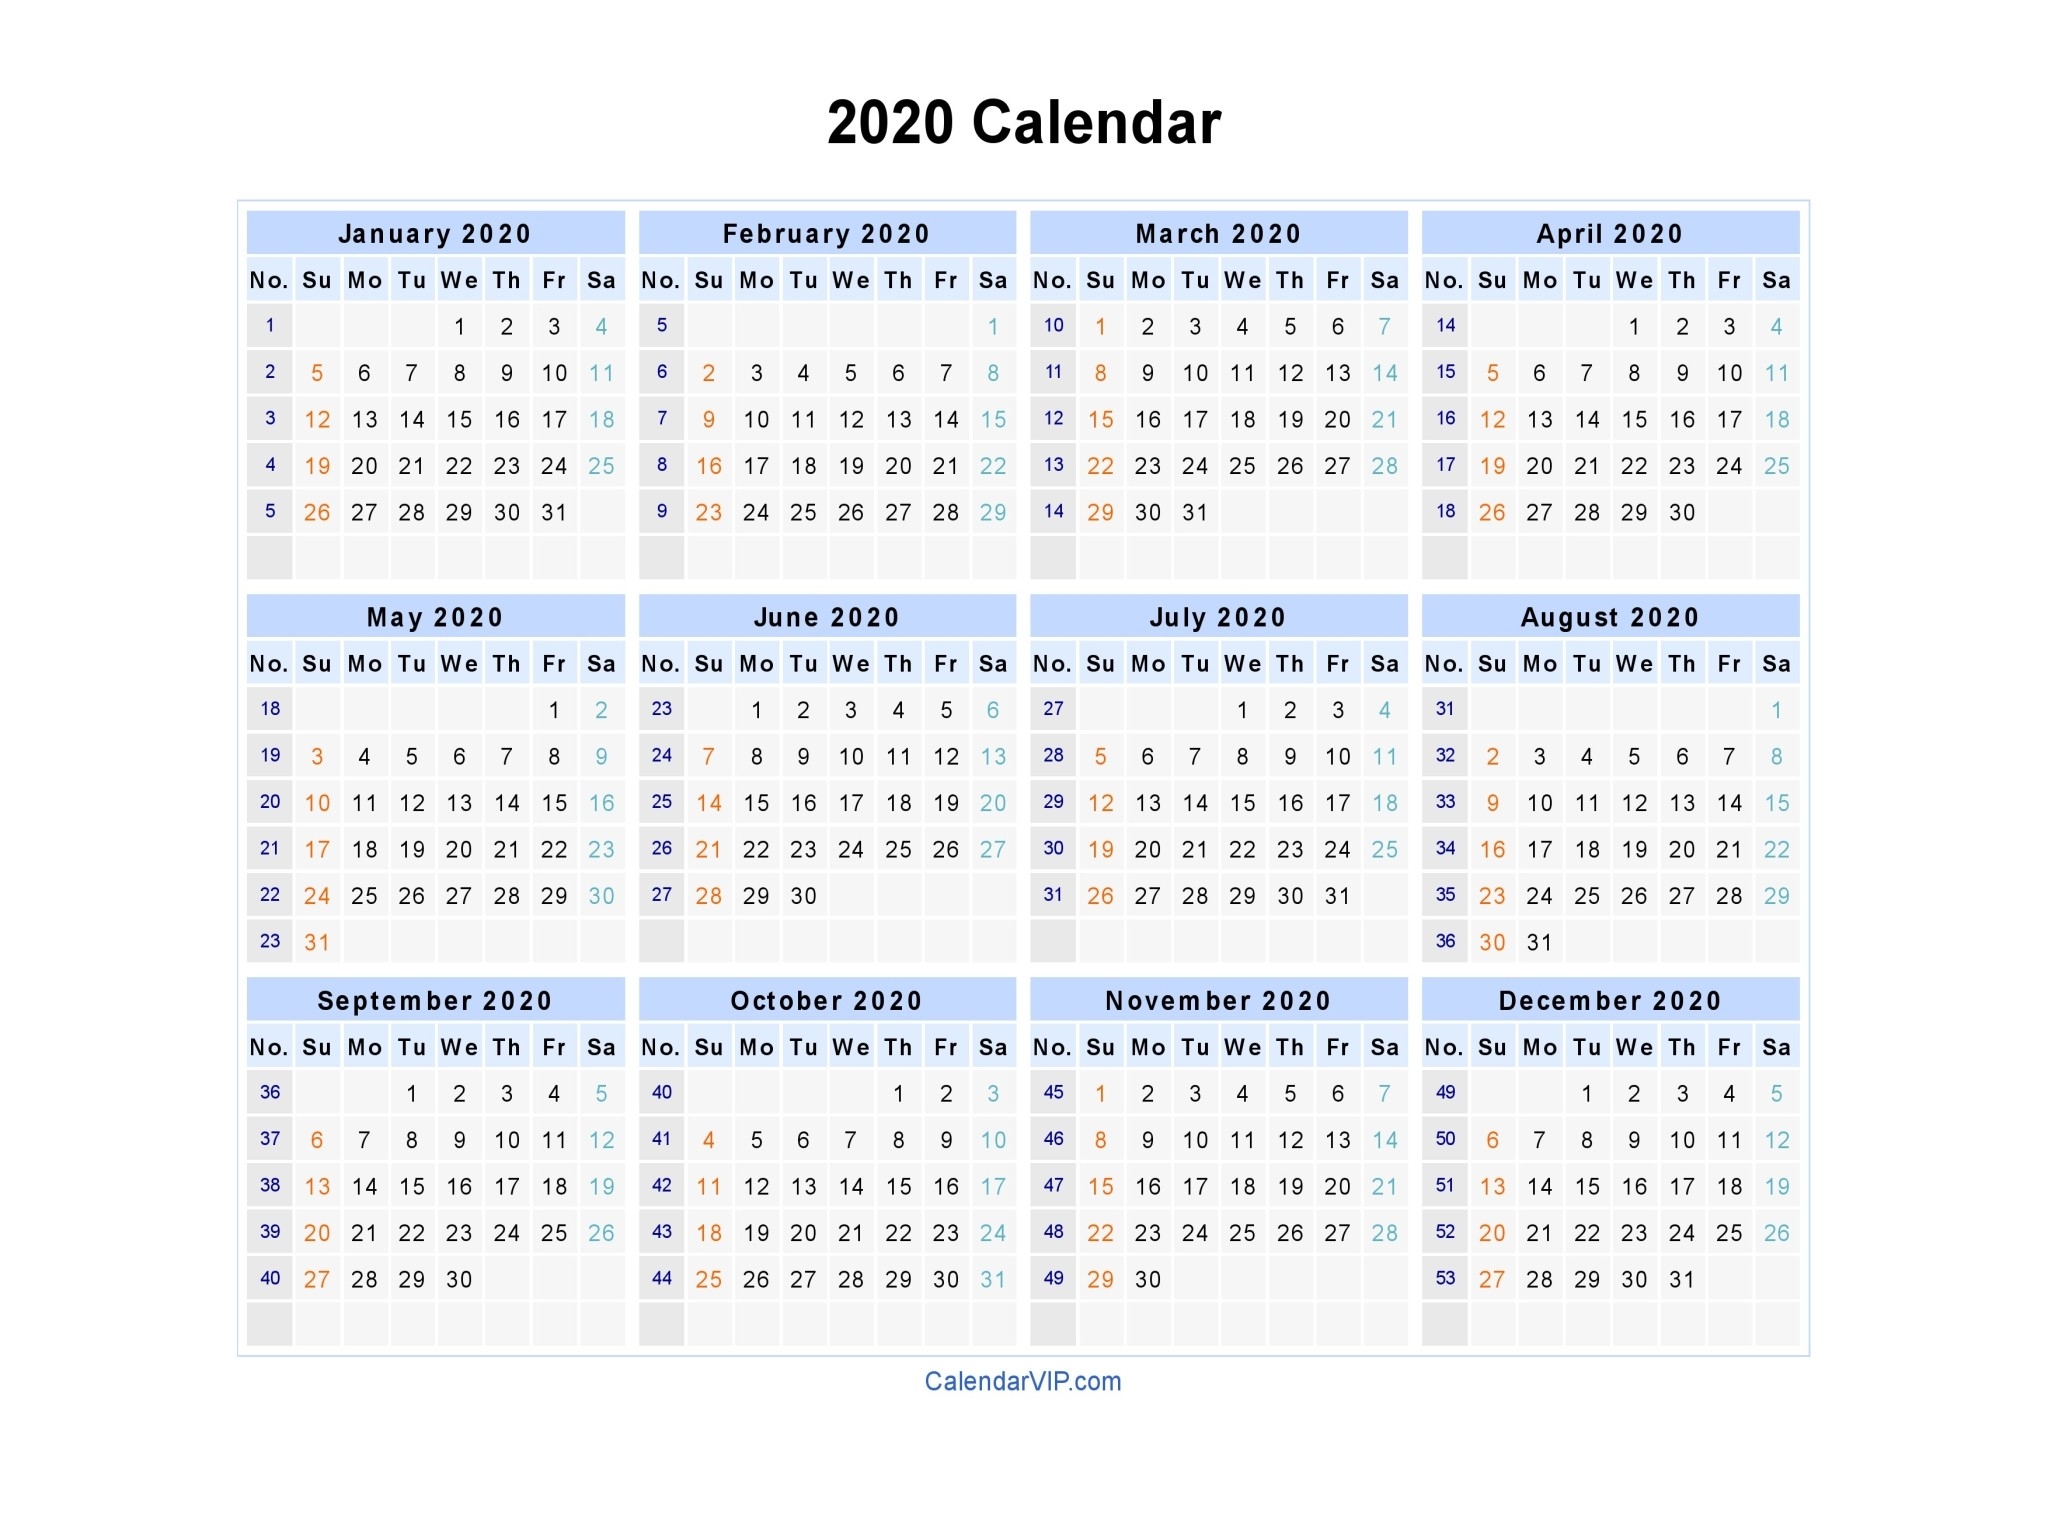 2020 Calendar - Blank Printable Calendar Template In Pdf-12 Month Blank Calendar 2020 Printable